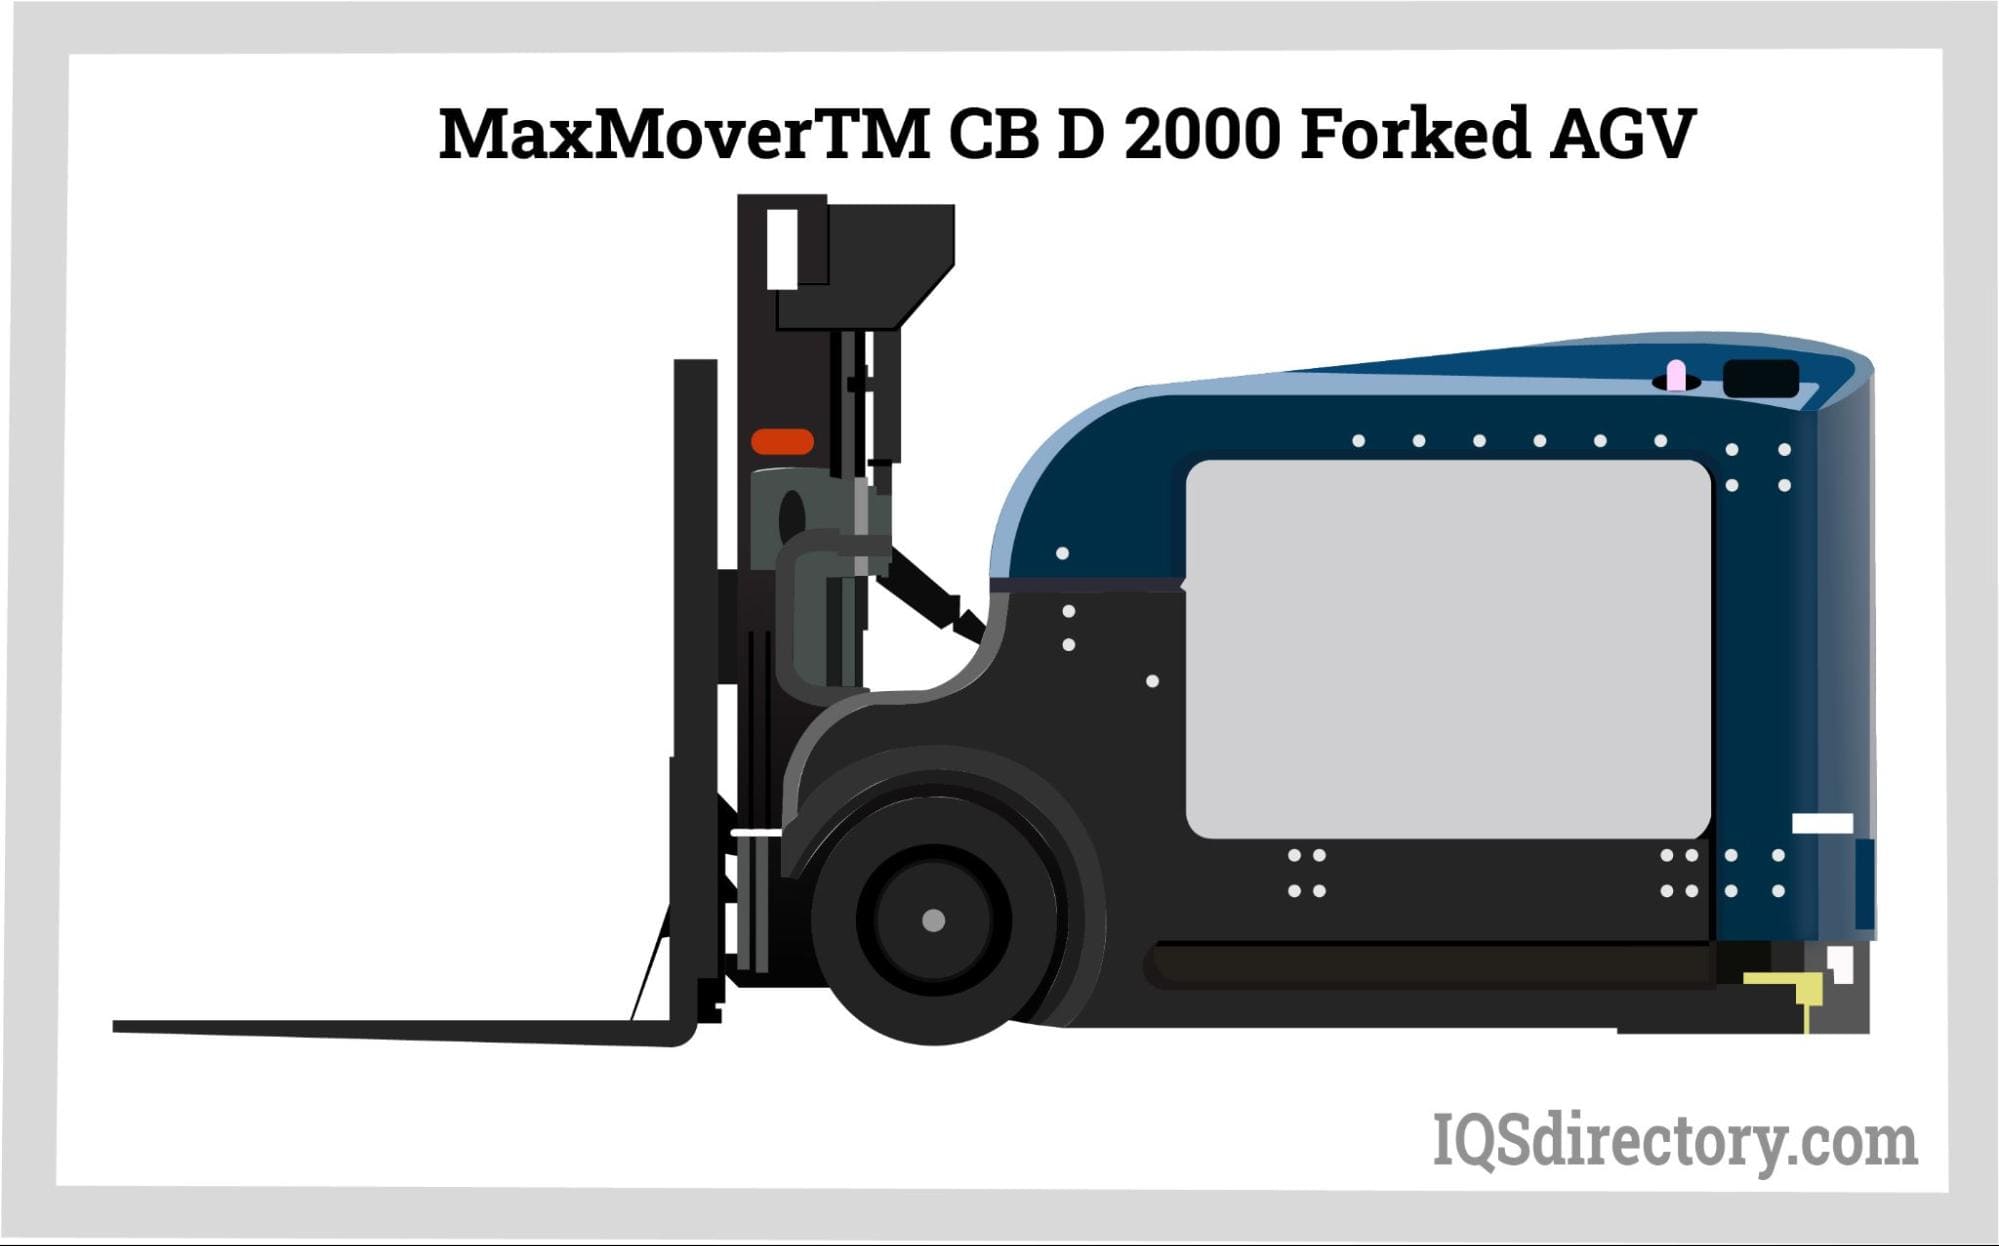 MaxMoverTM CB D 2000 Forked AGV